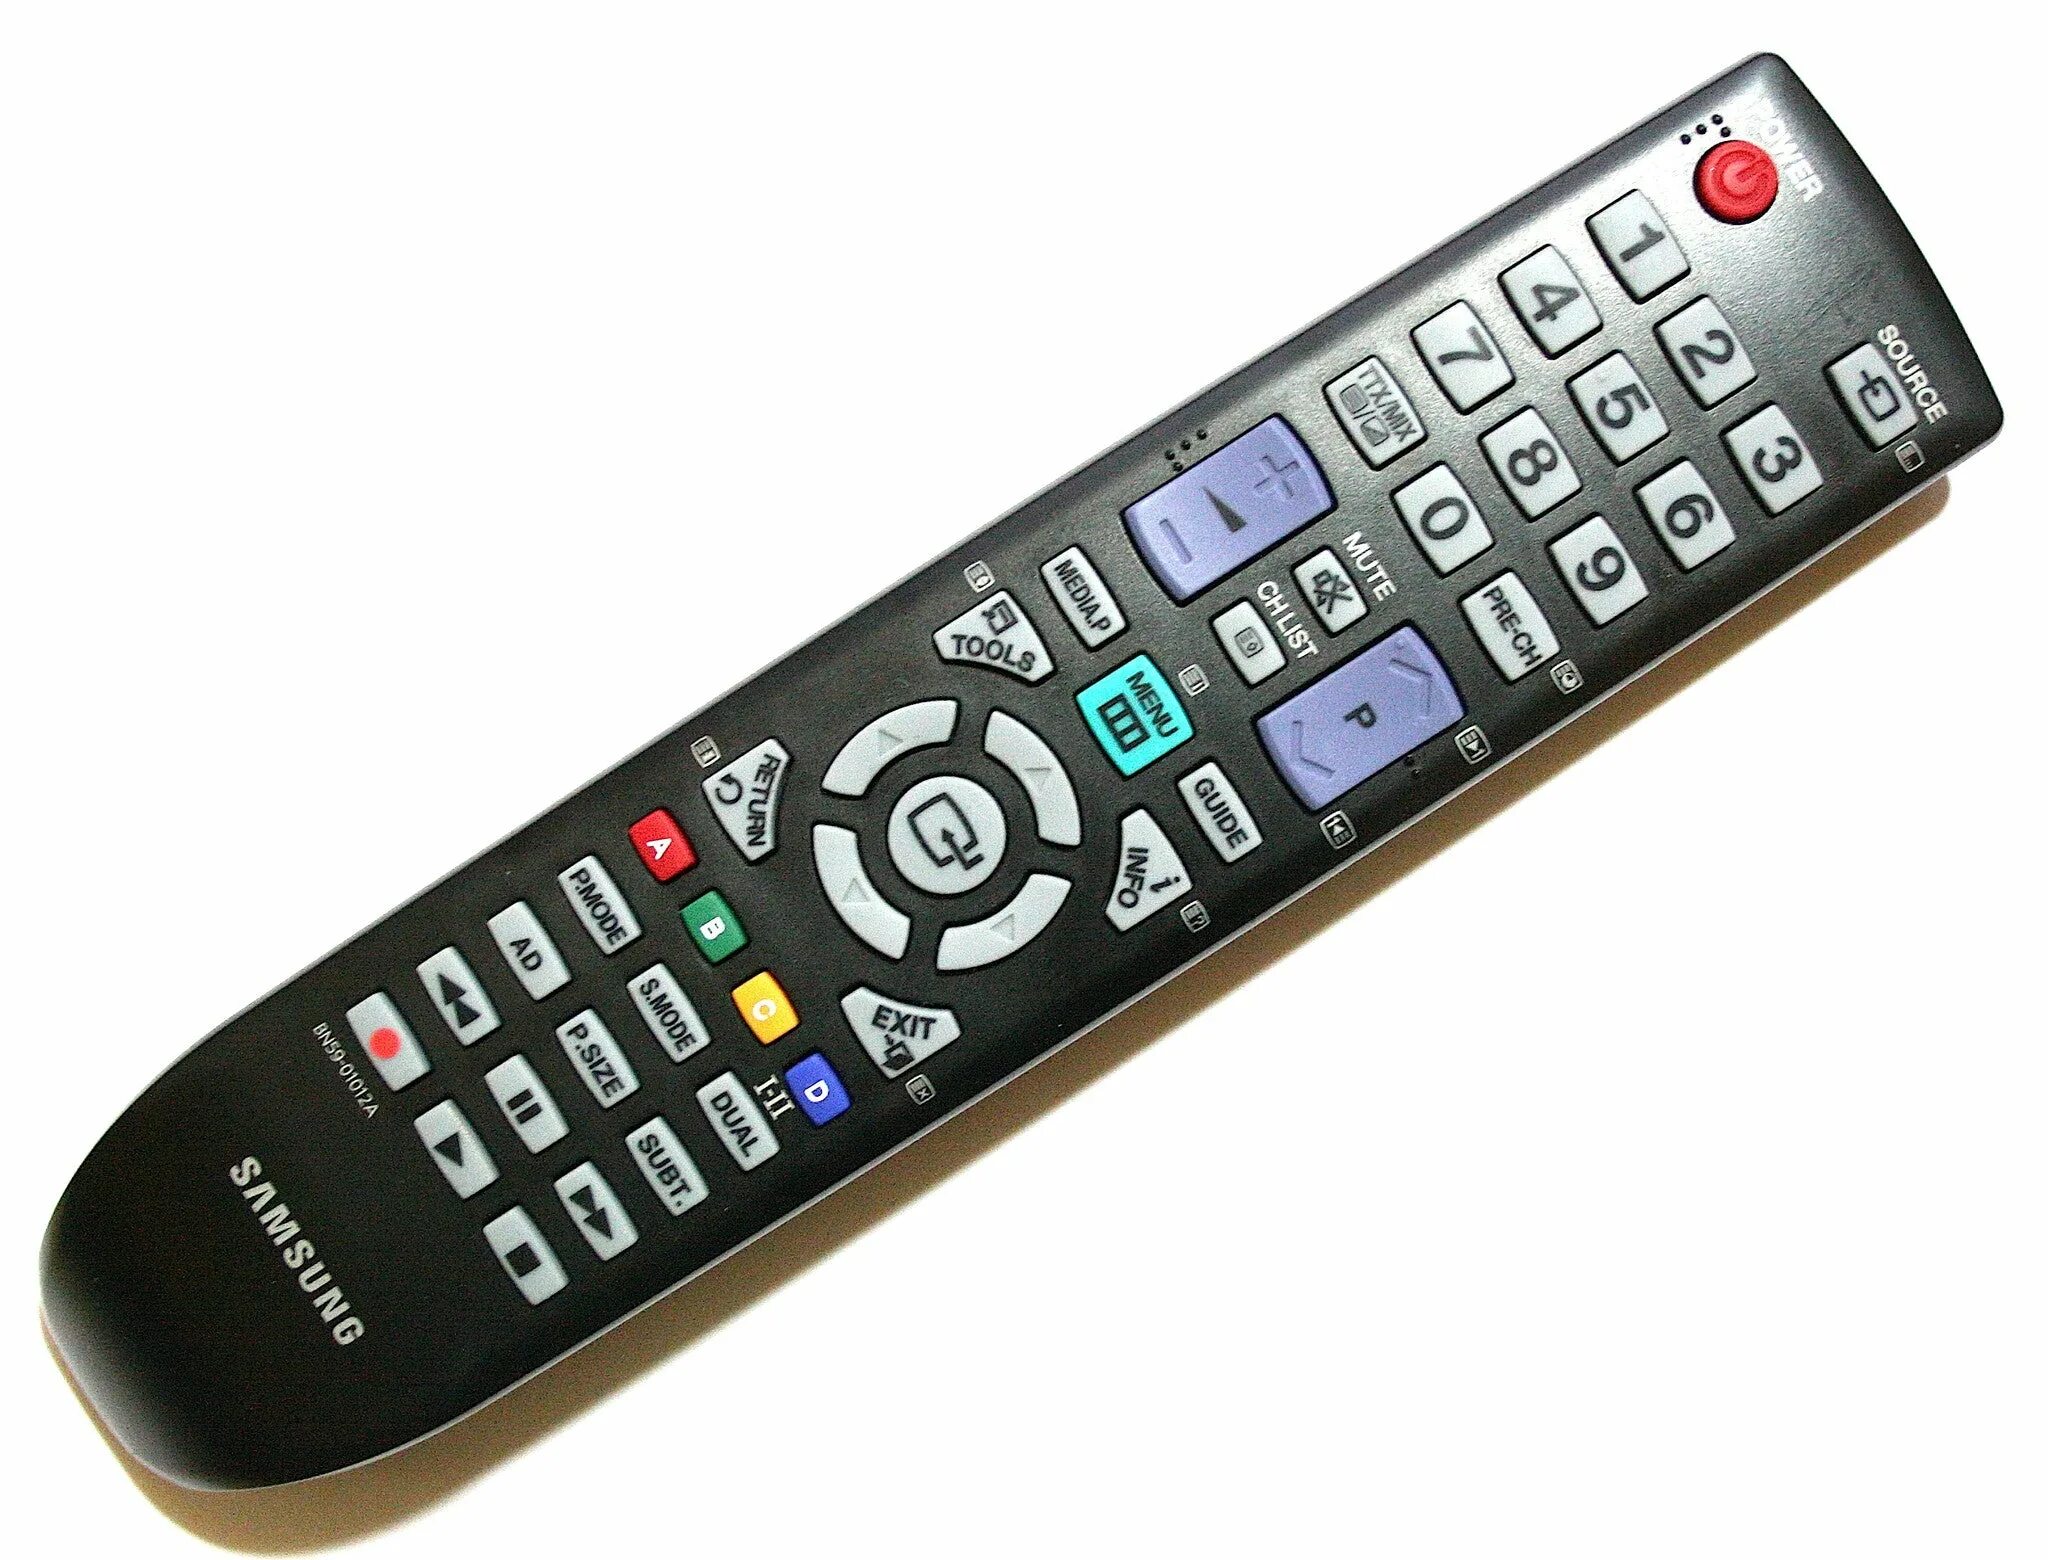 Лучший пульт для телевизора. Bn59-01012a пульт. Samsung bn59-01012a. Пульт для телевизора Samsung bn59-01012a. Пульт Ду для телевизора самсунг 32.